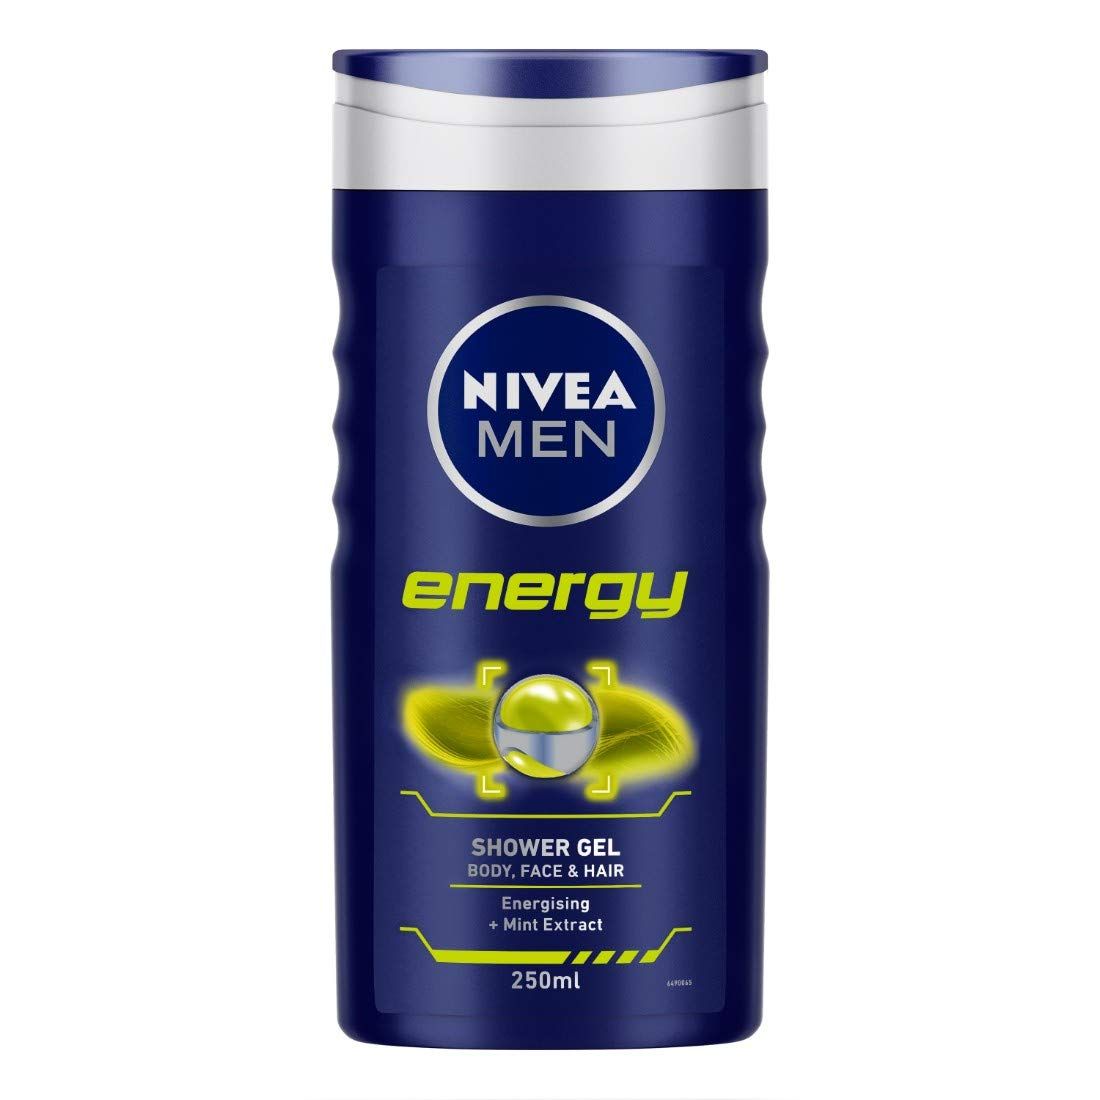 Nivea Men Energy Shower Gel (250ml) - Niram